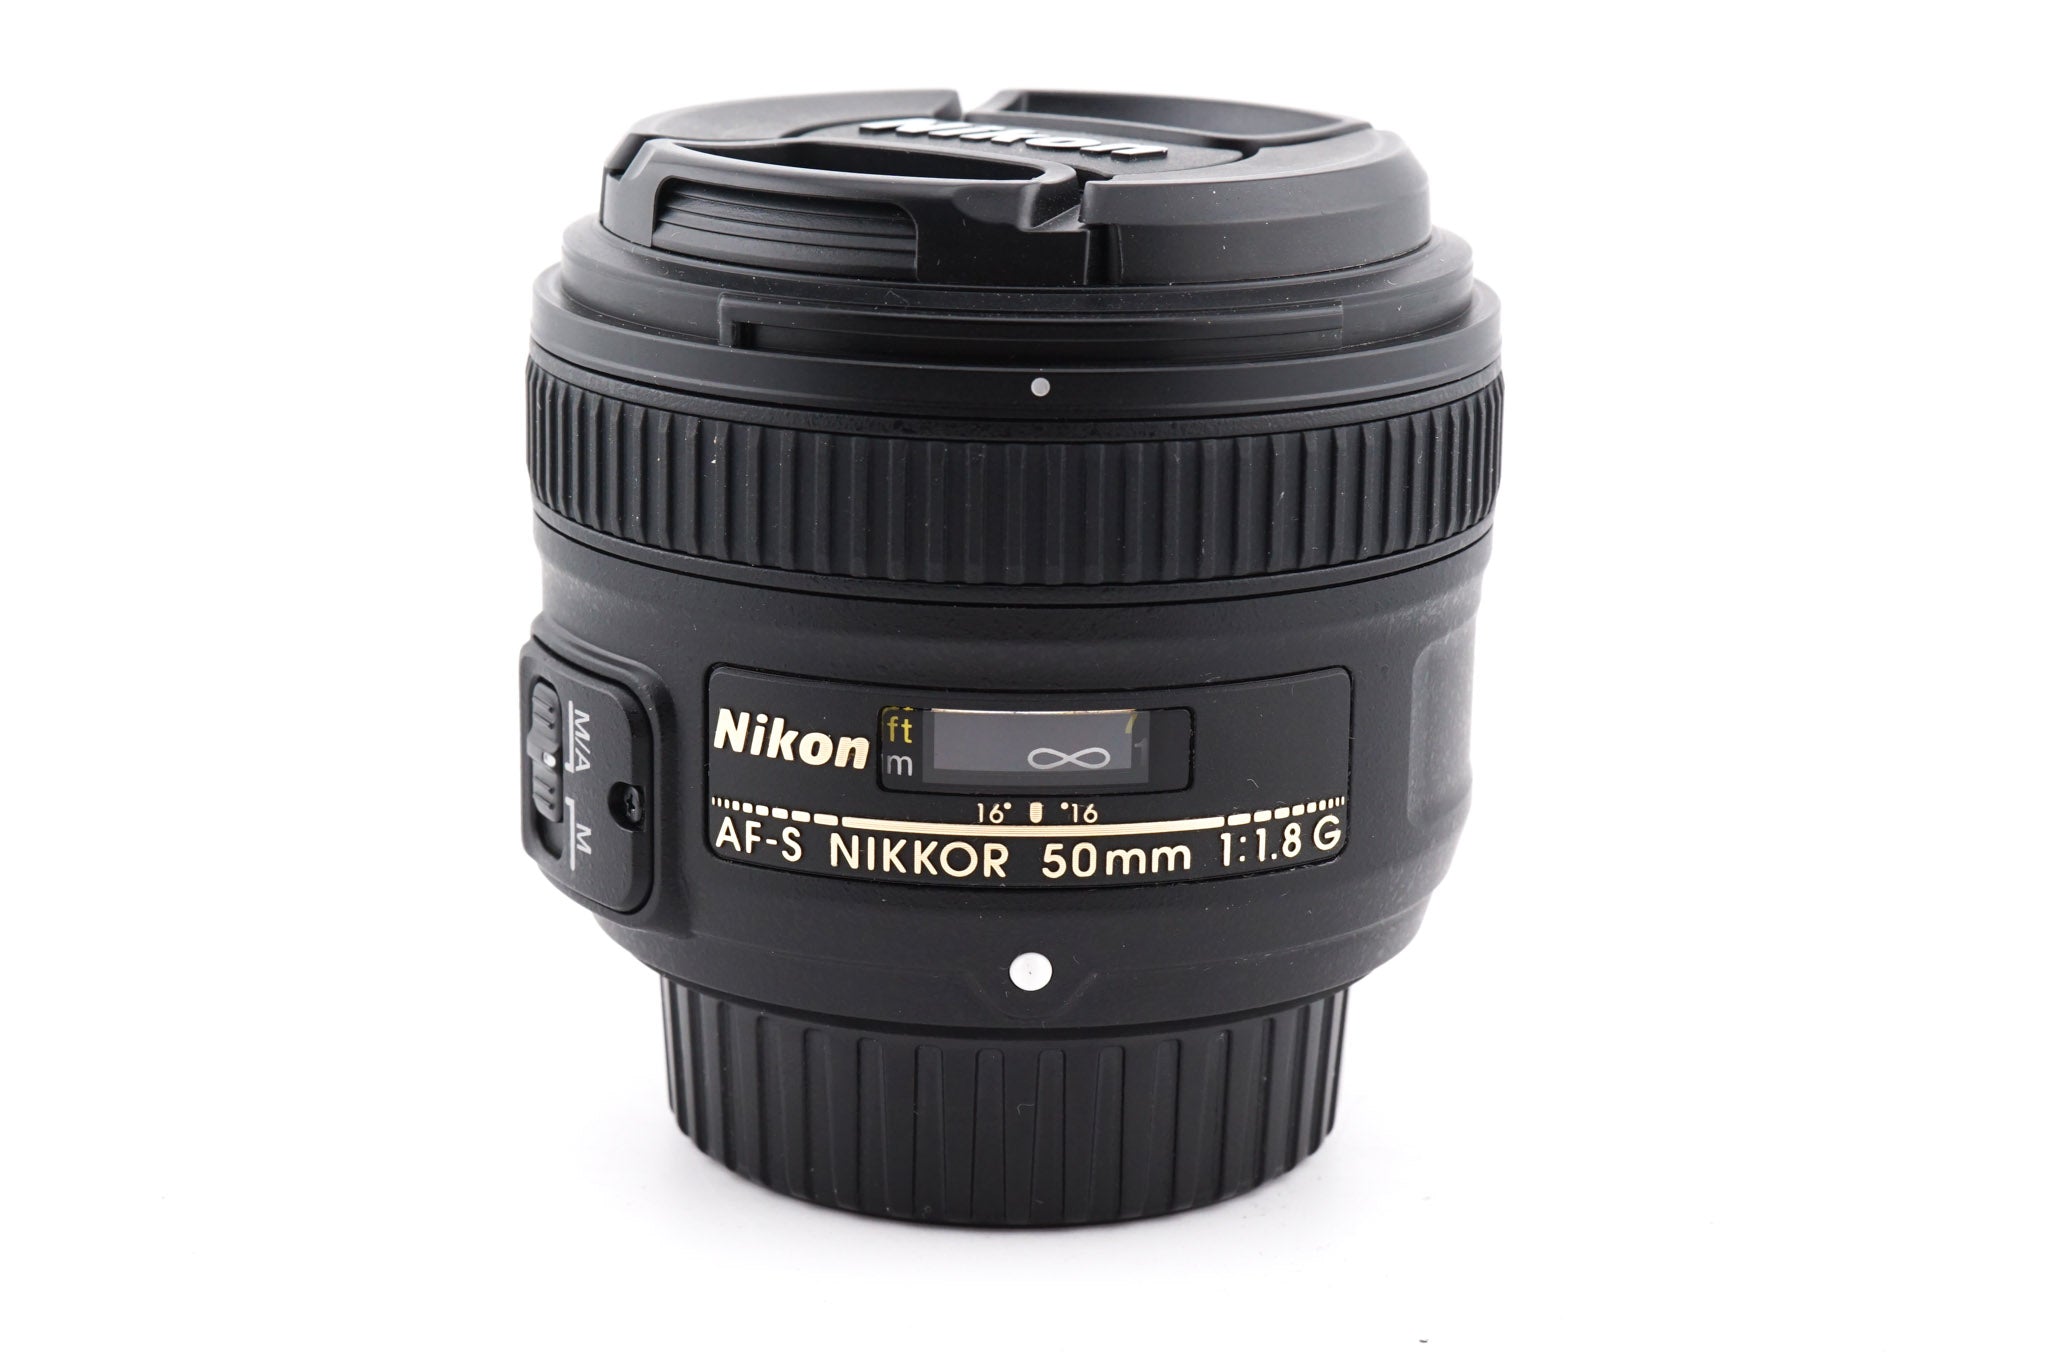 Nikon 50mm f1.8 G AF-S Nikkor - Lens